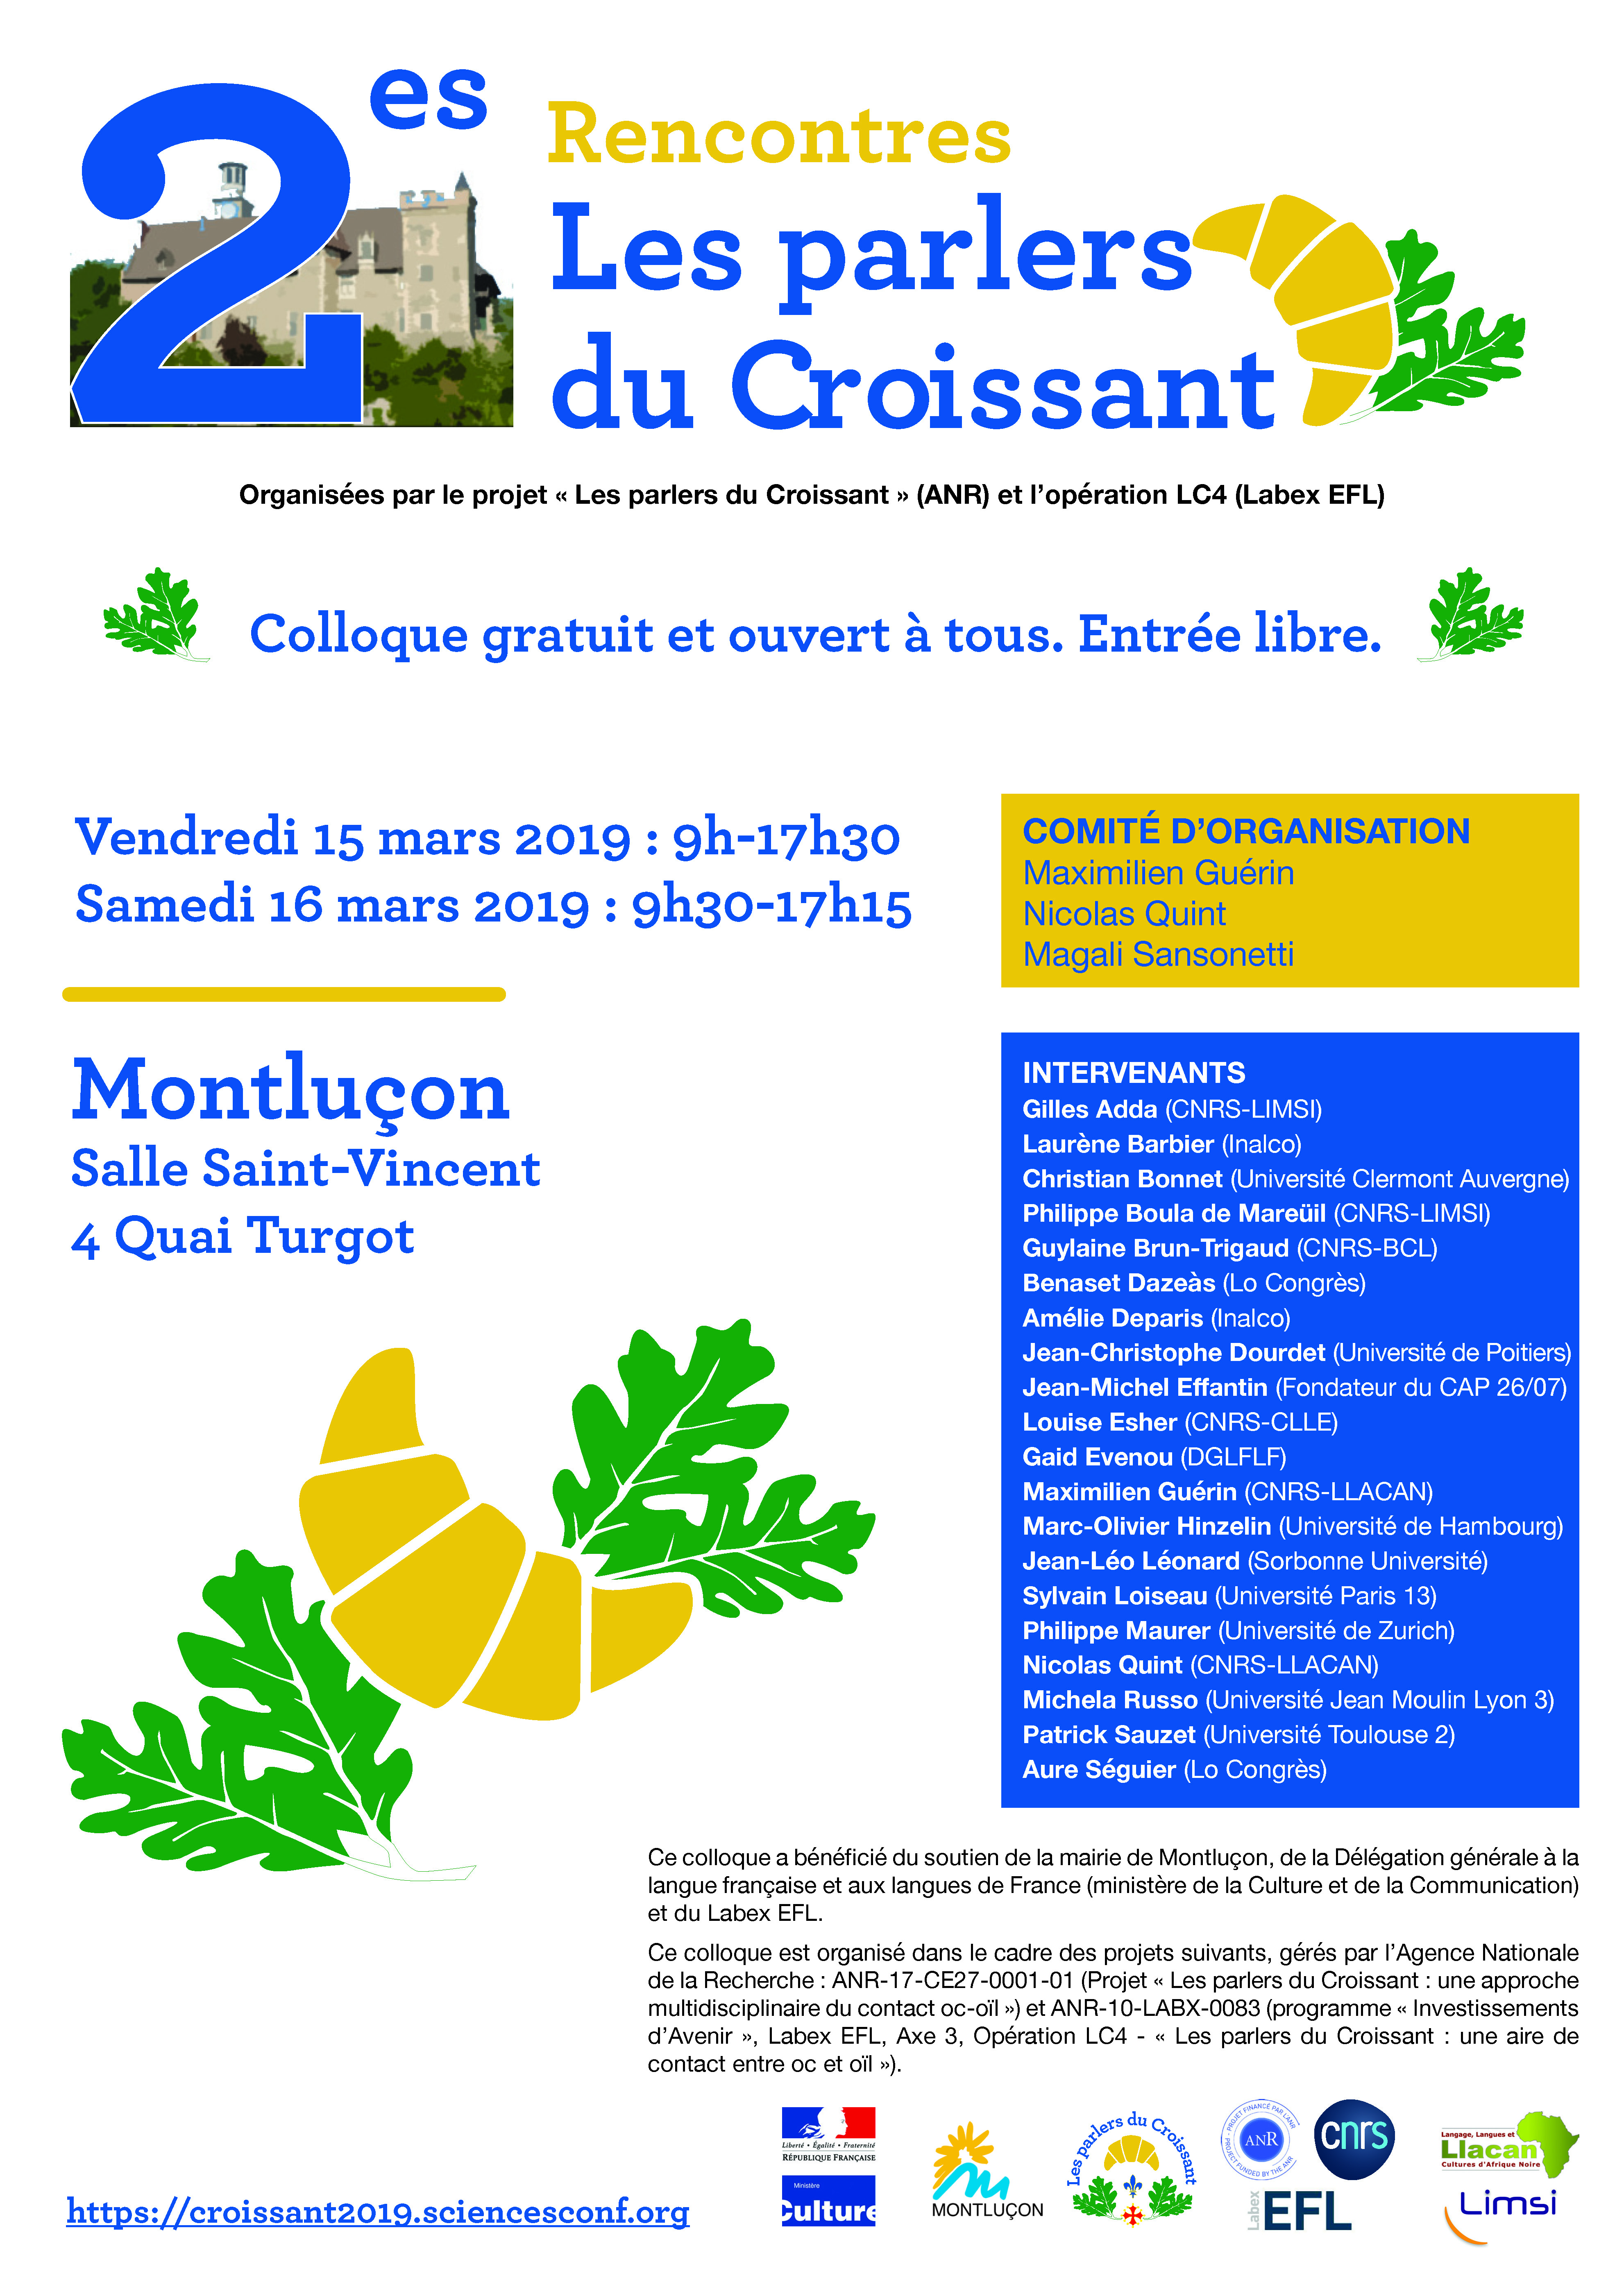 COLLOQUE "LES PARLERS DU CROISSANT" -
Patrick Sauzet (Université Toulouse 2 / CLLE)
"Le Croissant : typicité et appartenance"